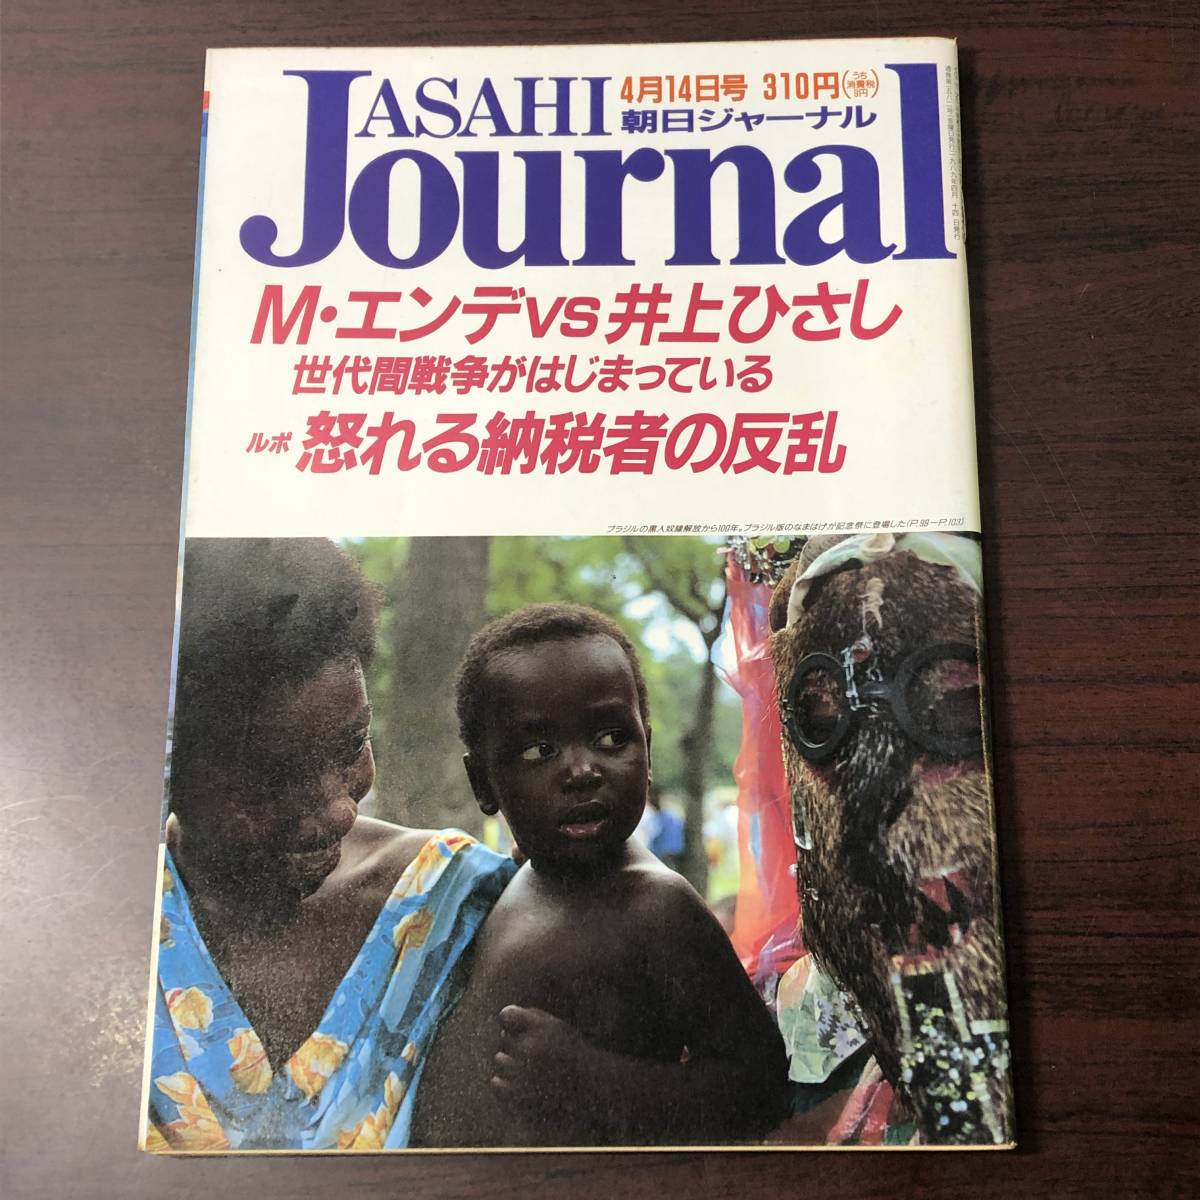 A02【ゆうメール送料無料】朝日ジャーナル 1989年4月14日号 VOL.31 NO.16の画像1